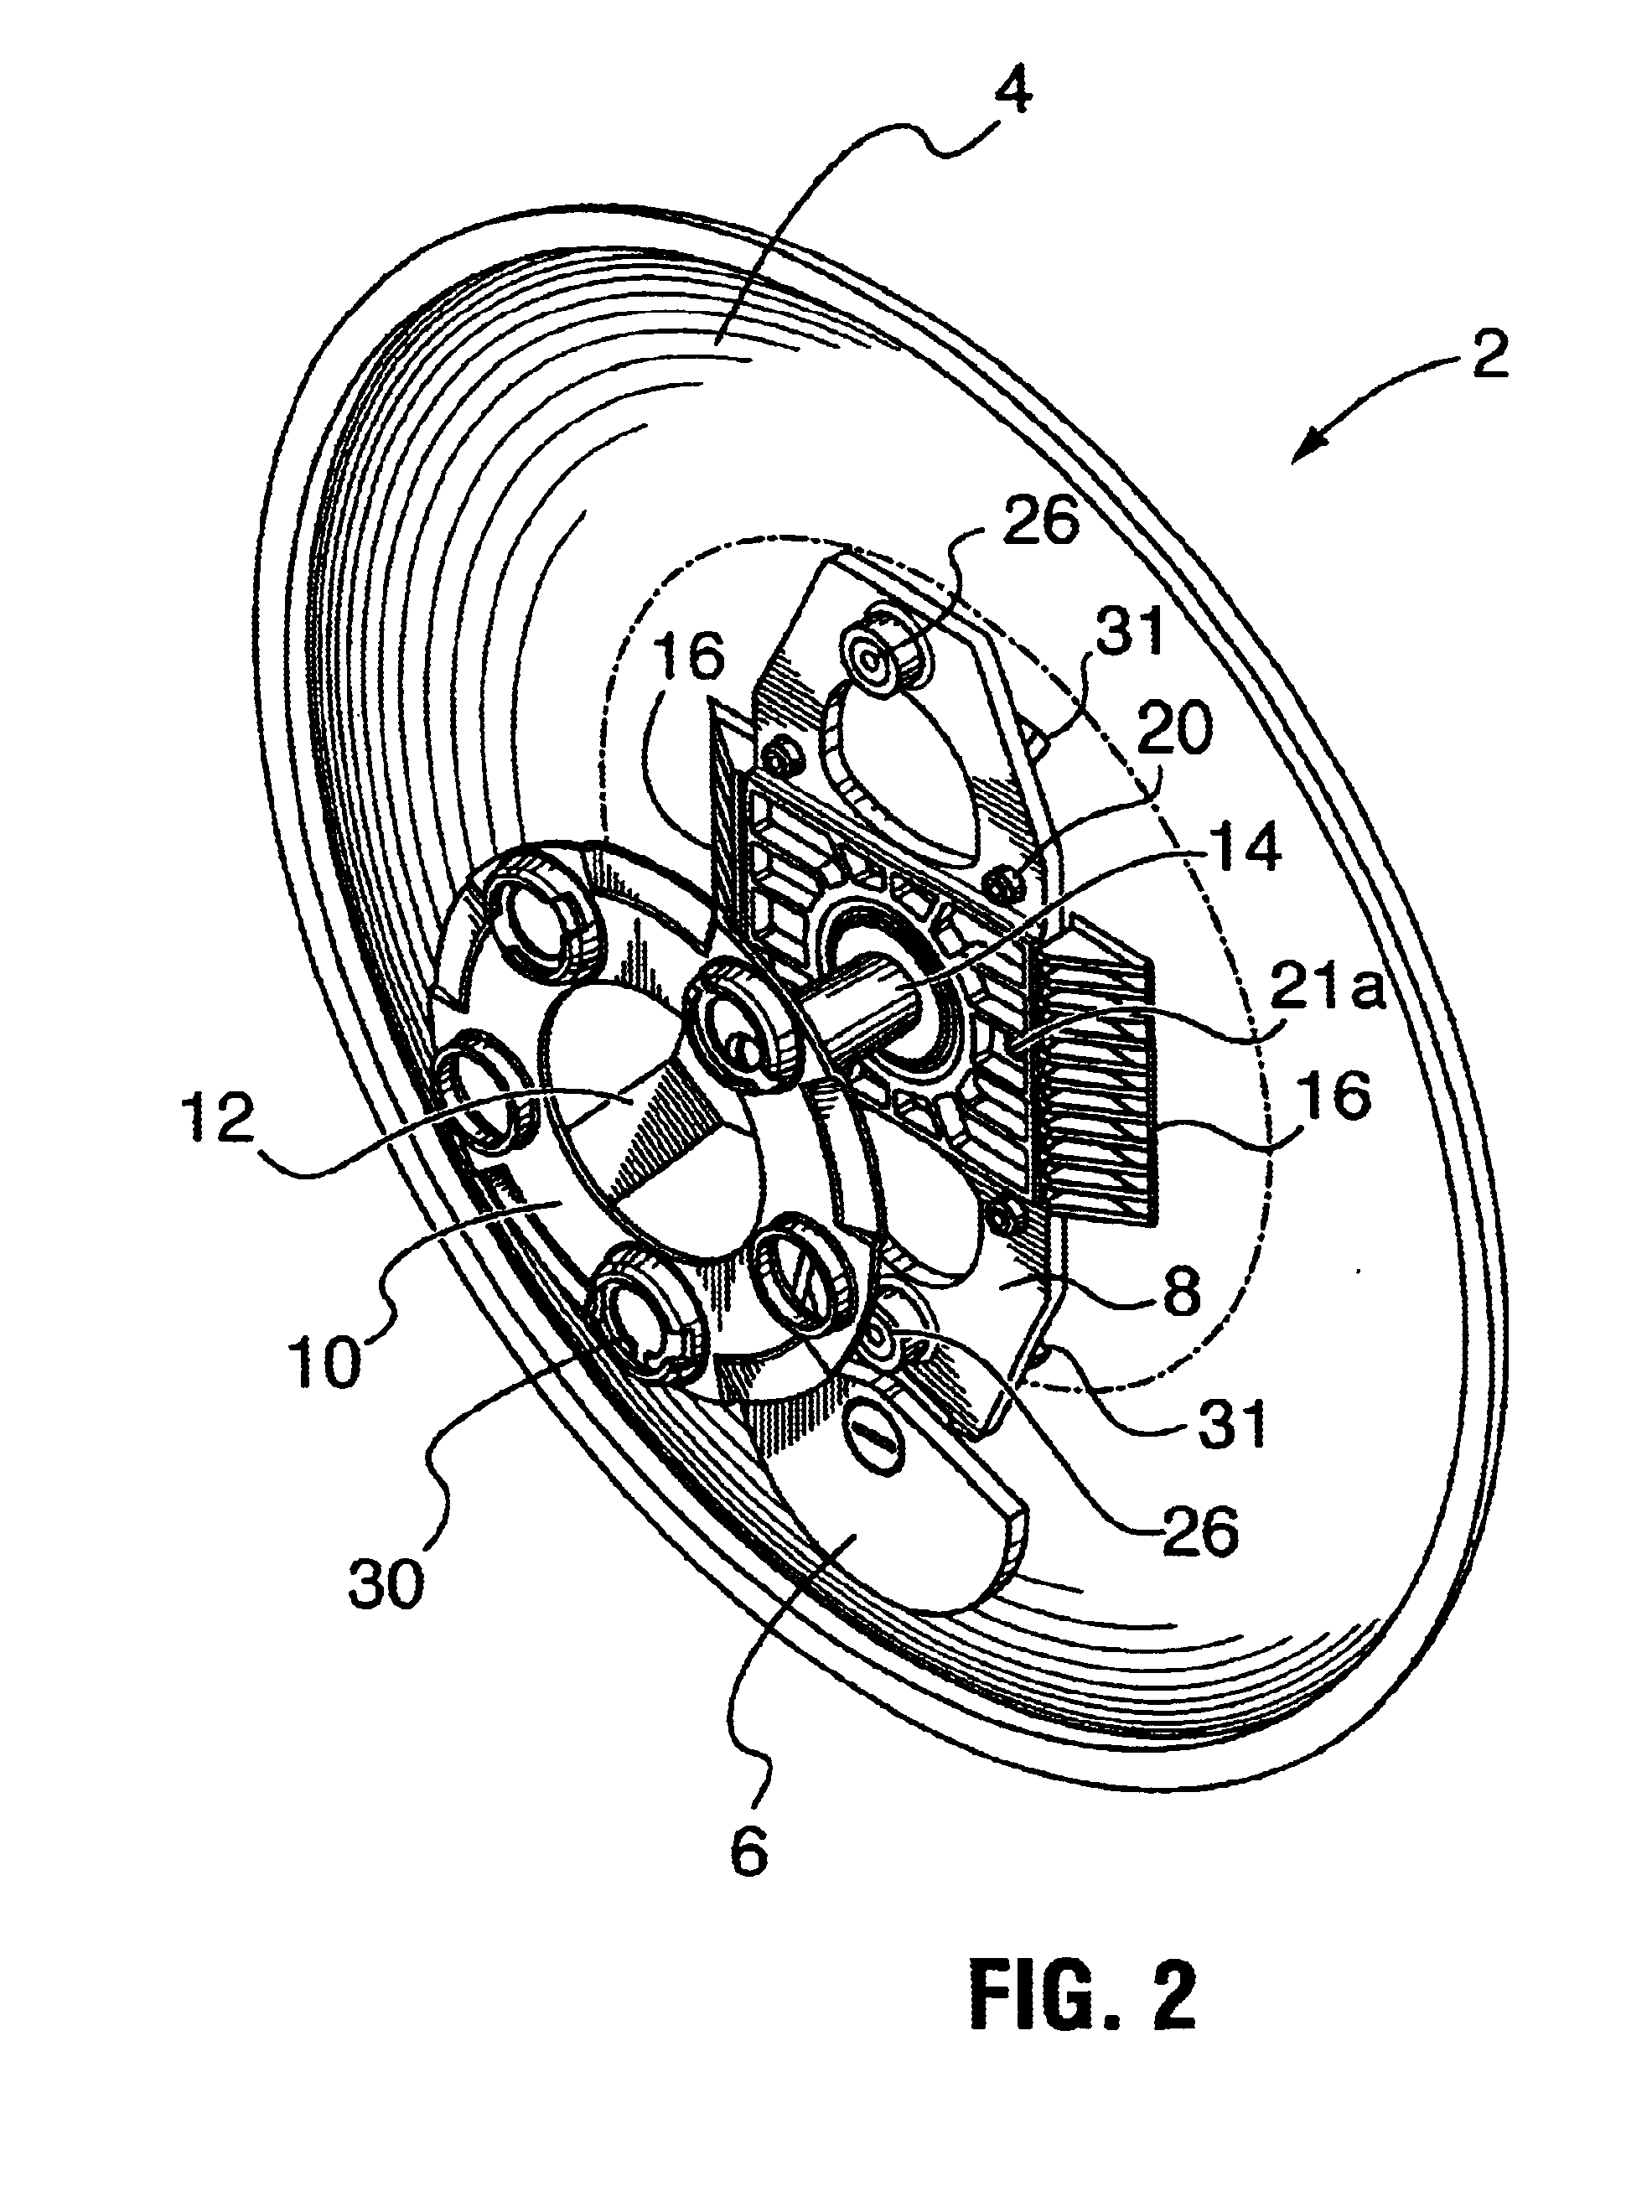 Non-rotating wheel cover